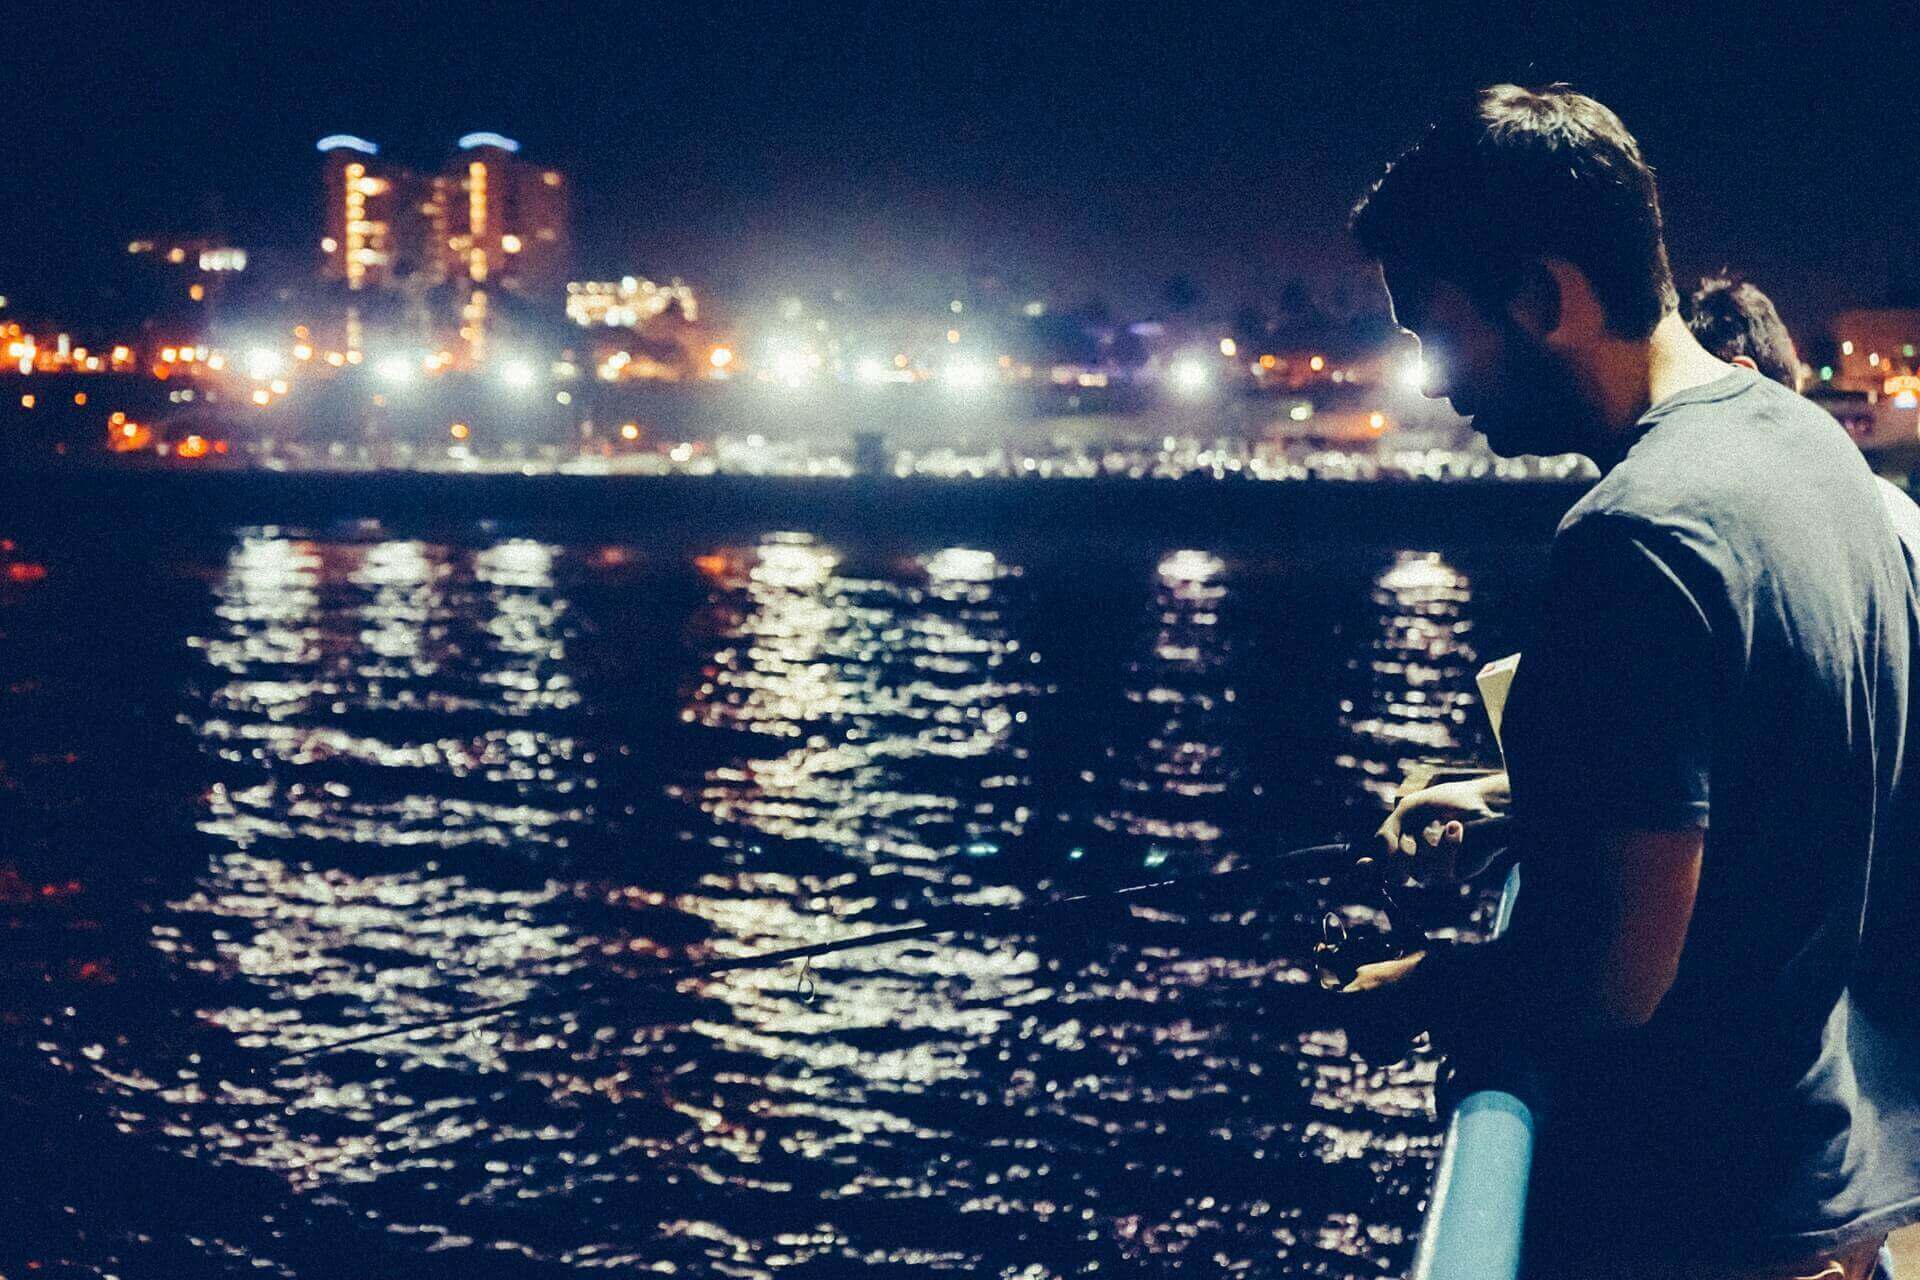 A man fishing at night